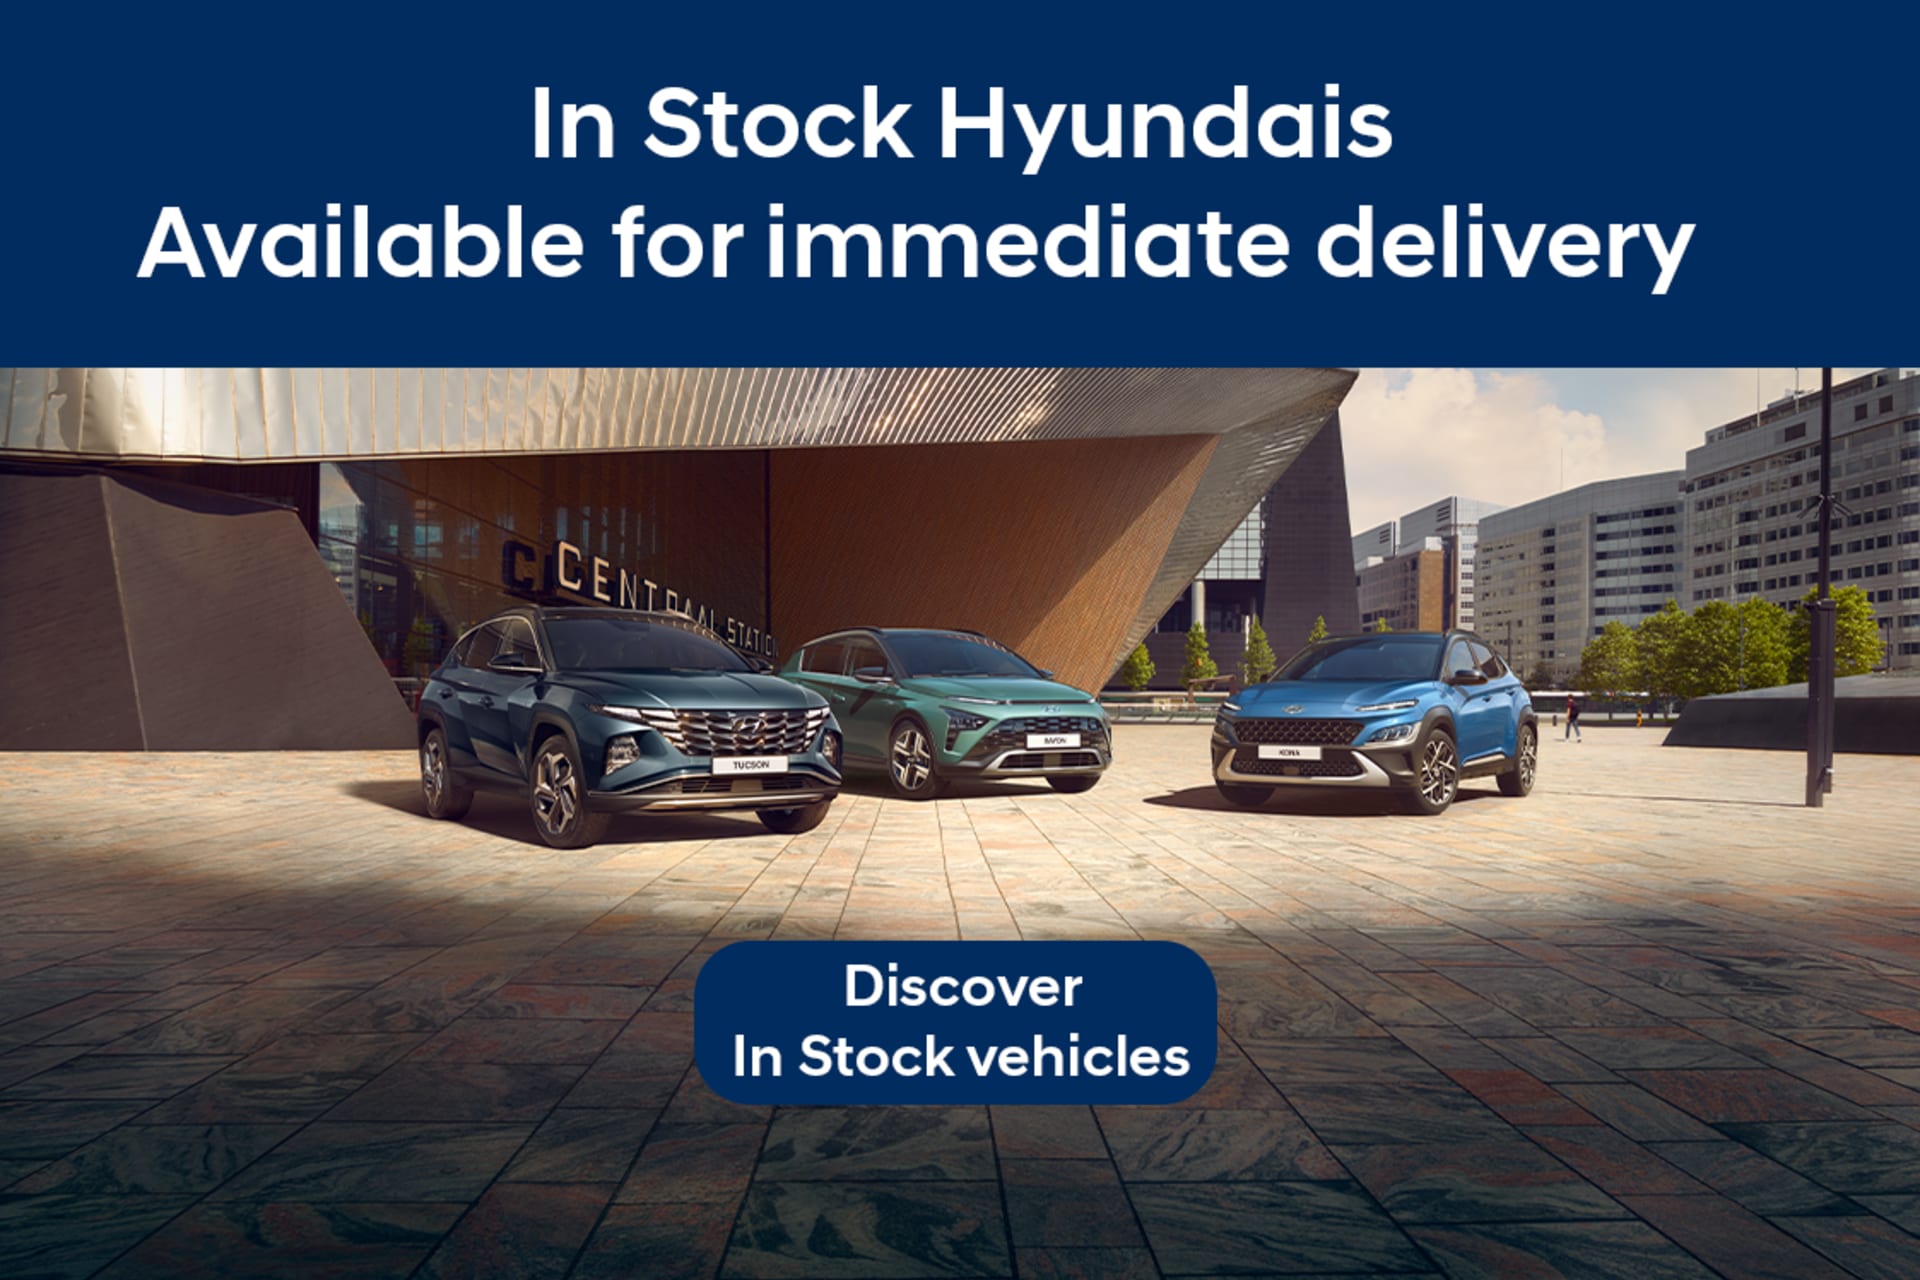 In Stock Hyundais